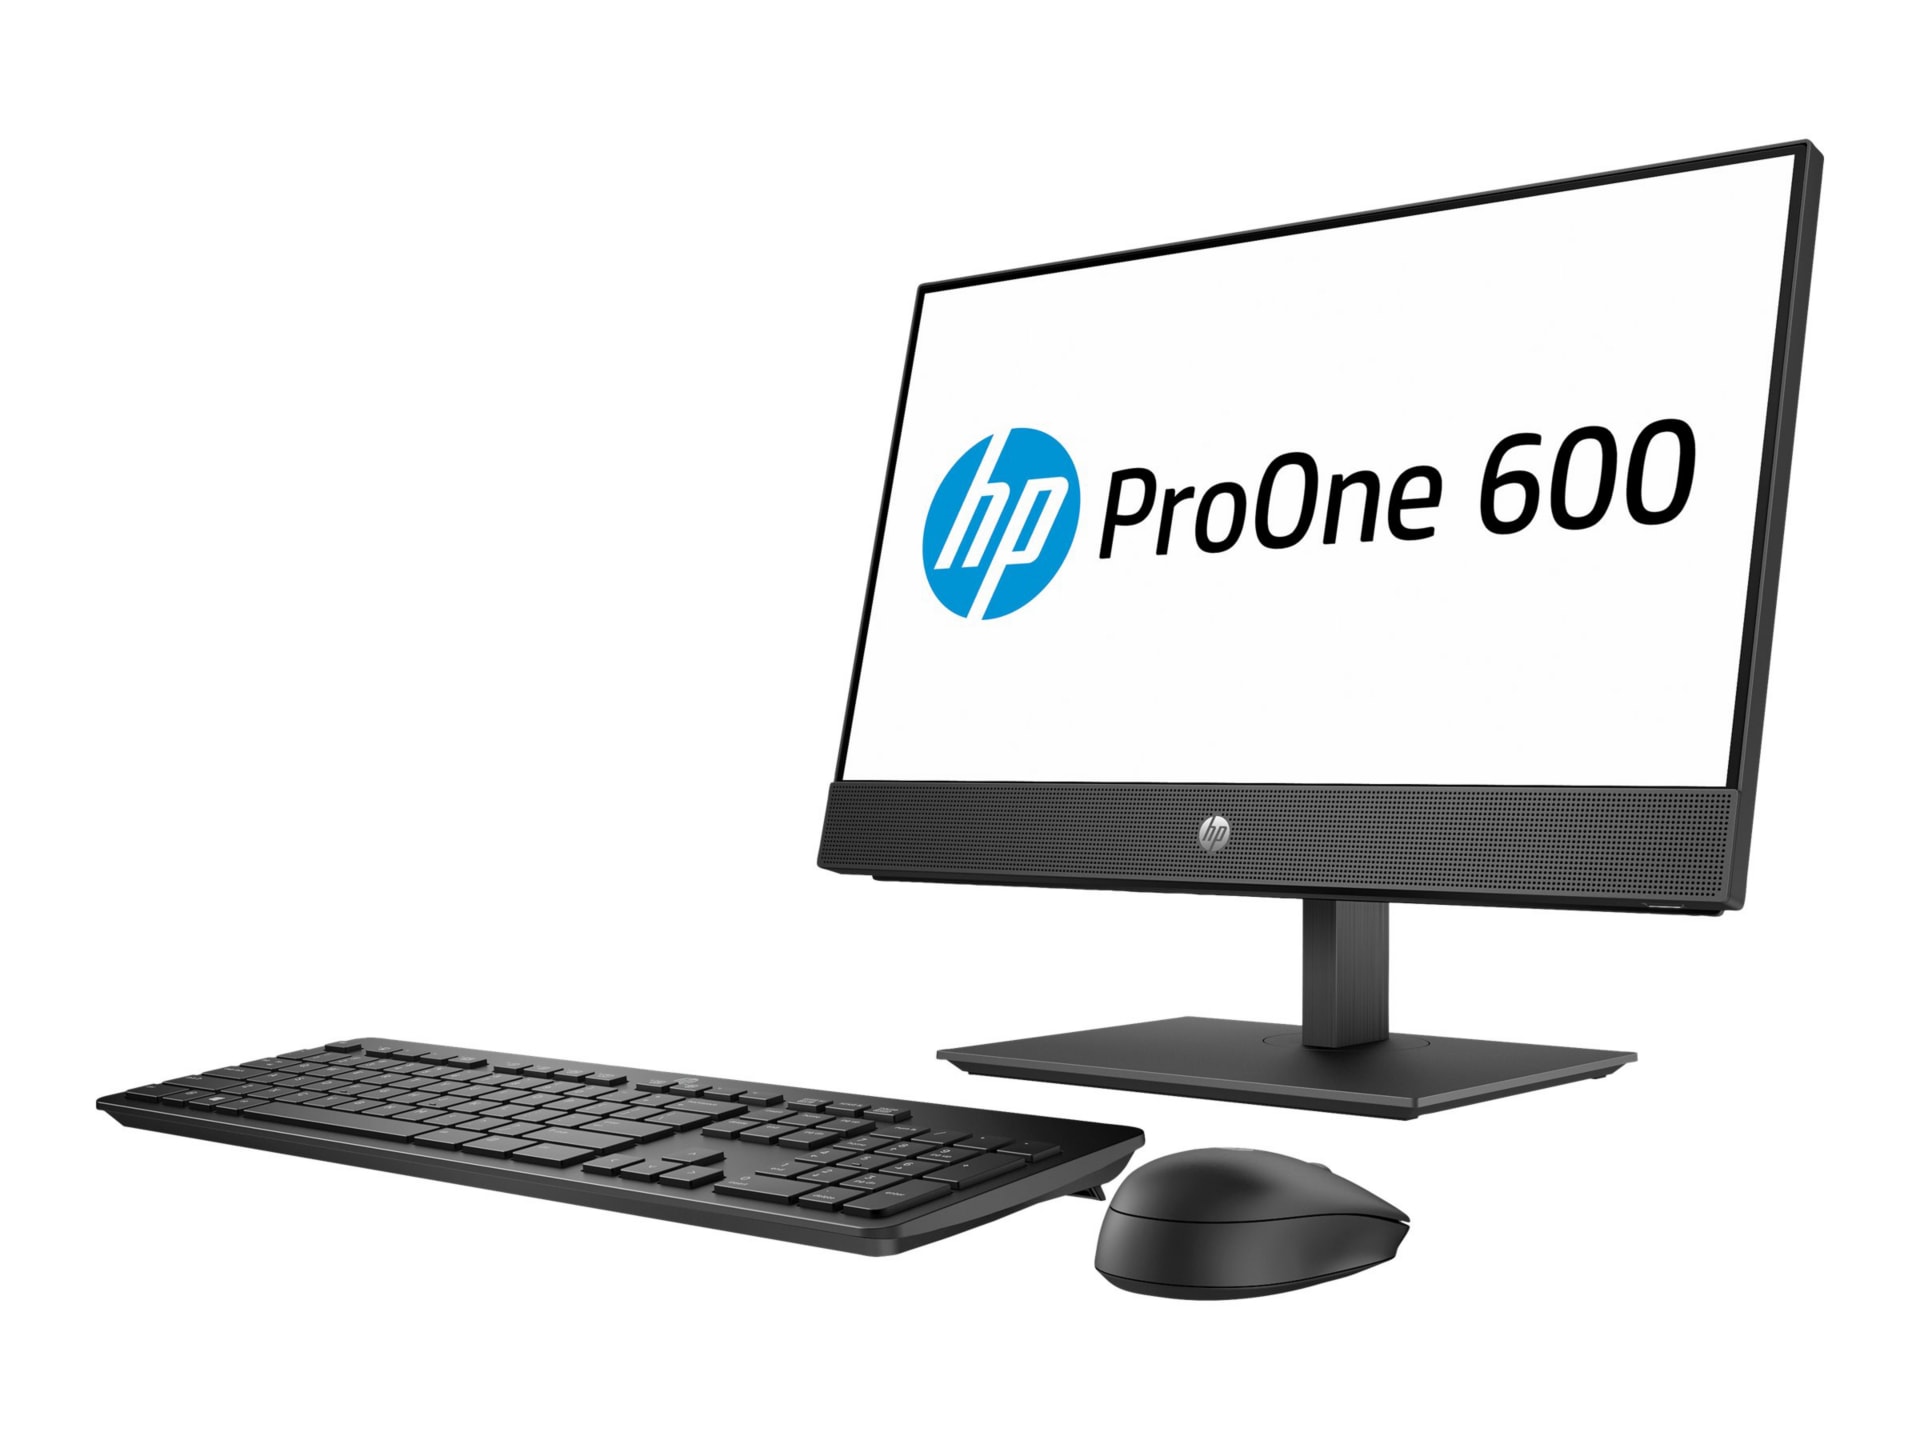 HP SB ProOne 600 G4 AiO 21.5" Core i5-8500 4GB RAM 500GB W10P - Non-Touch